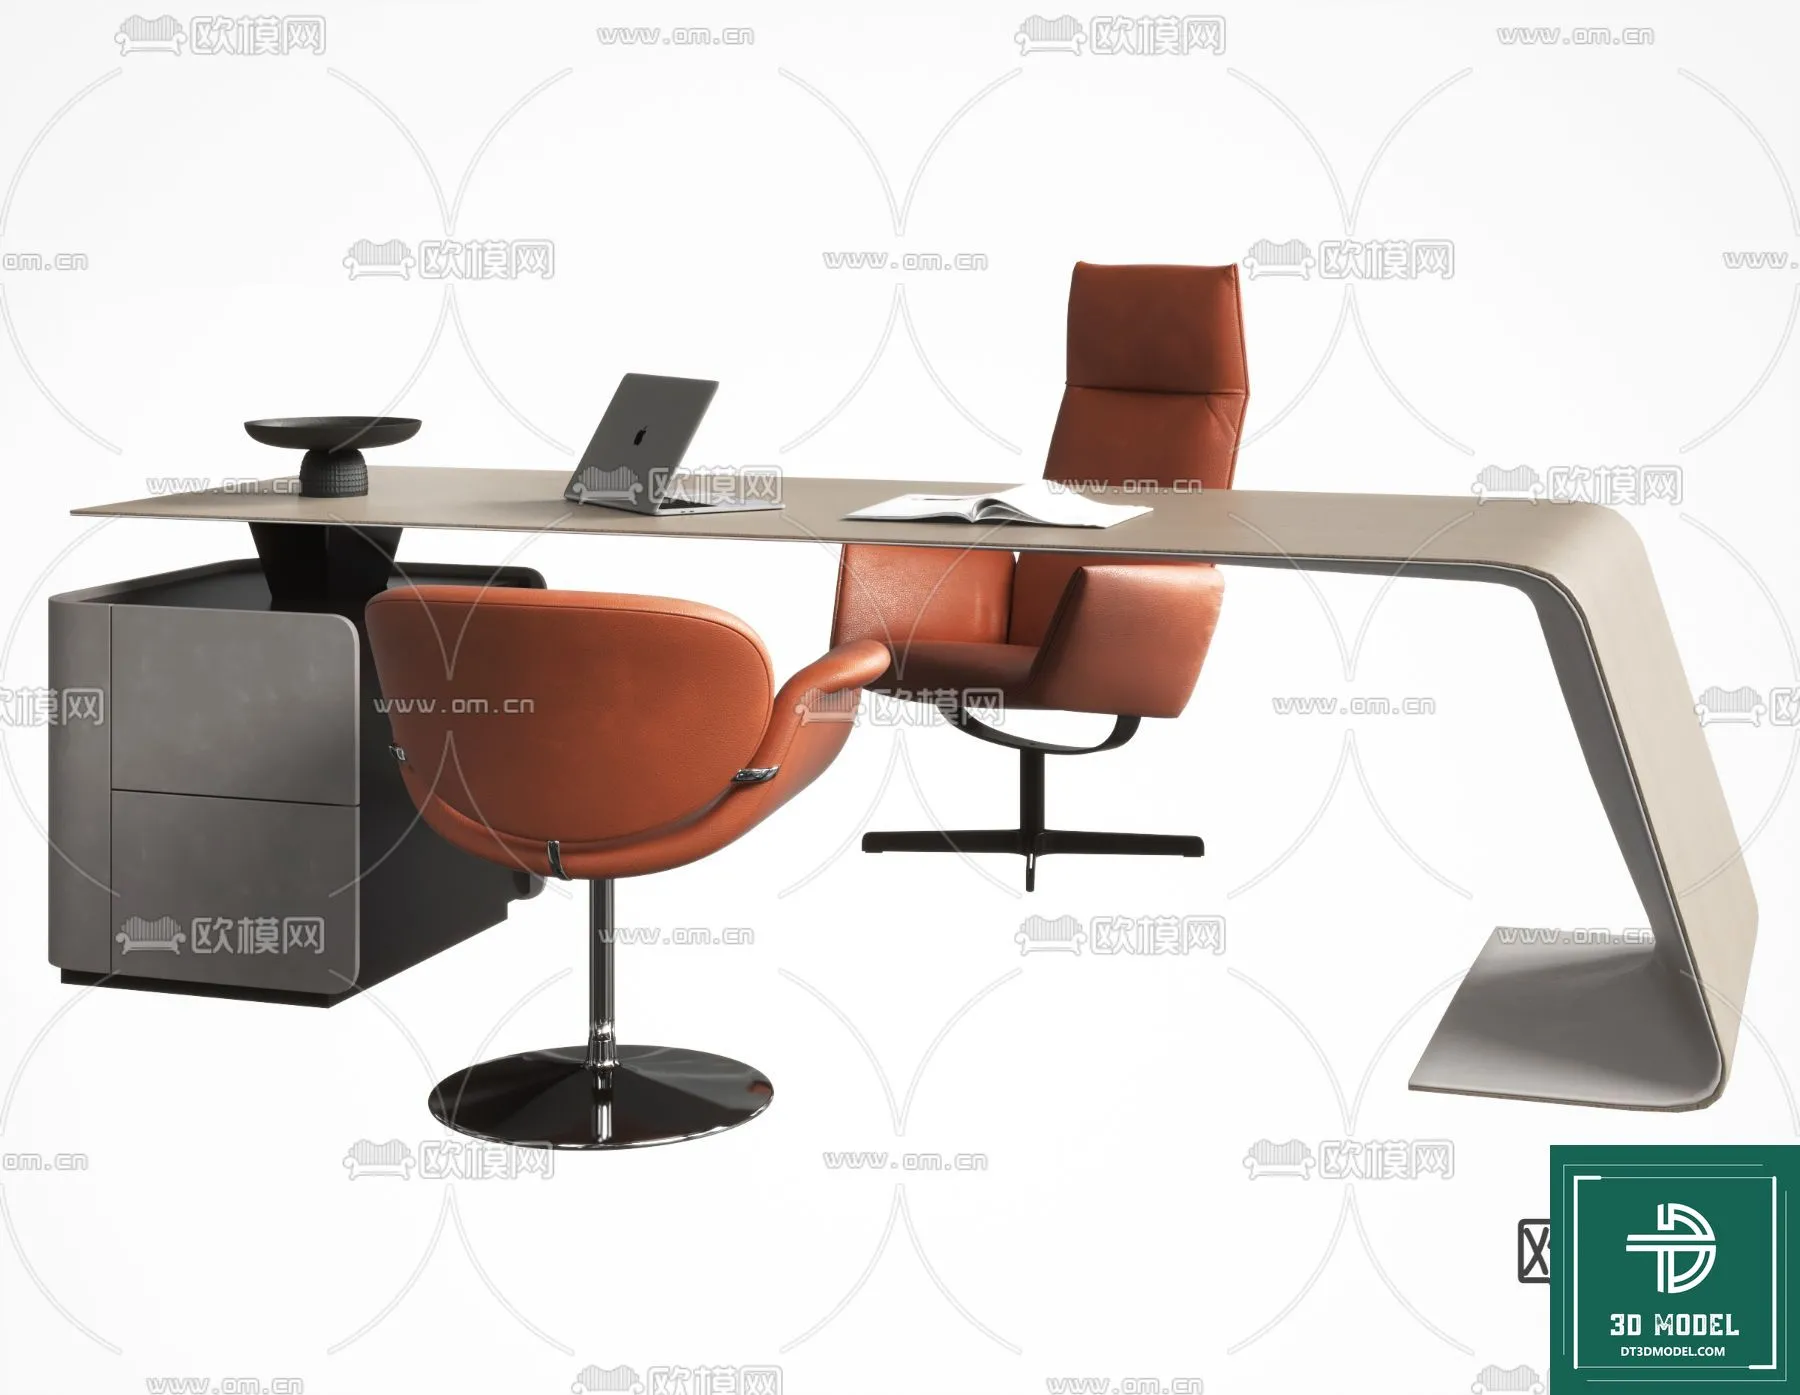 OFFICE TABLES – DESK 3DMODELS – 014